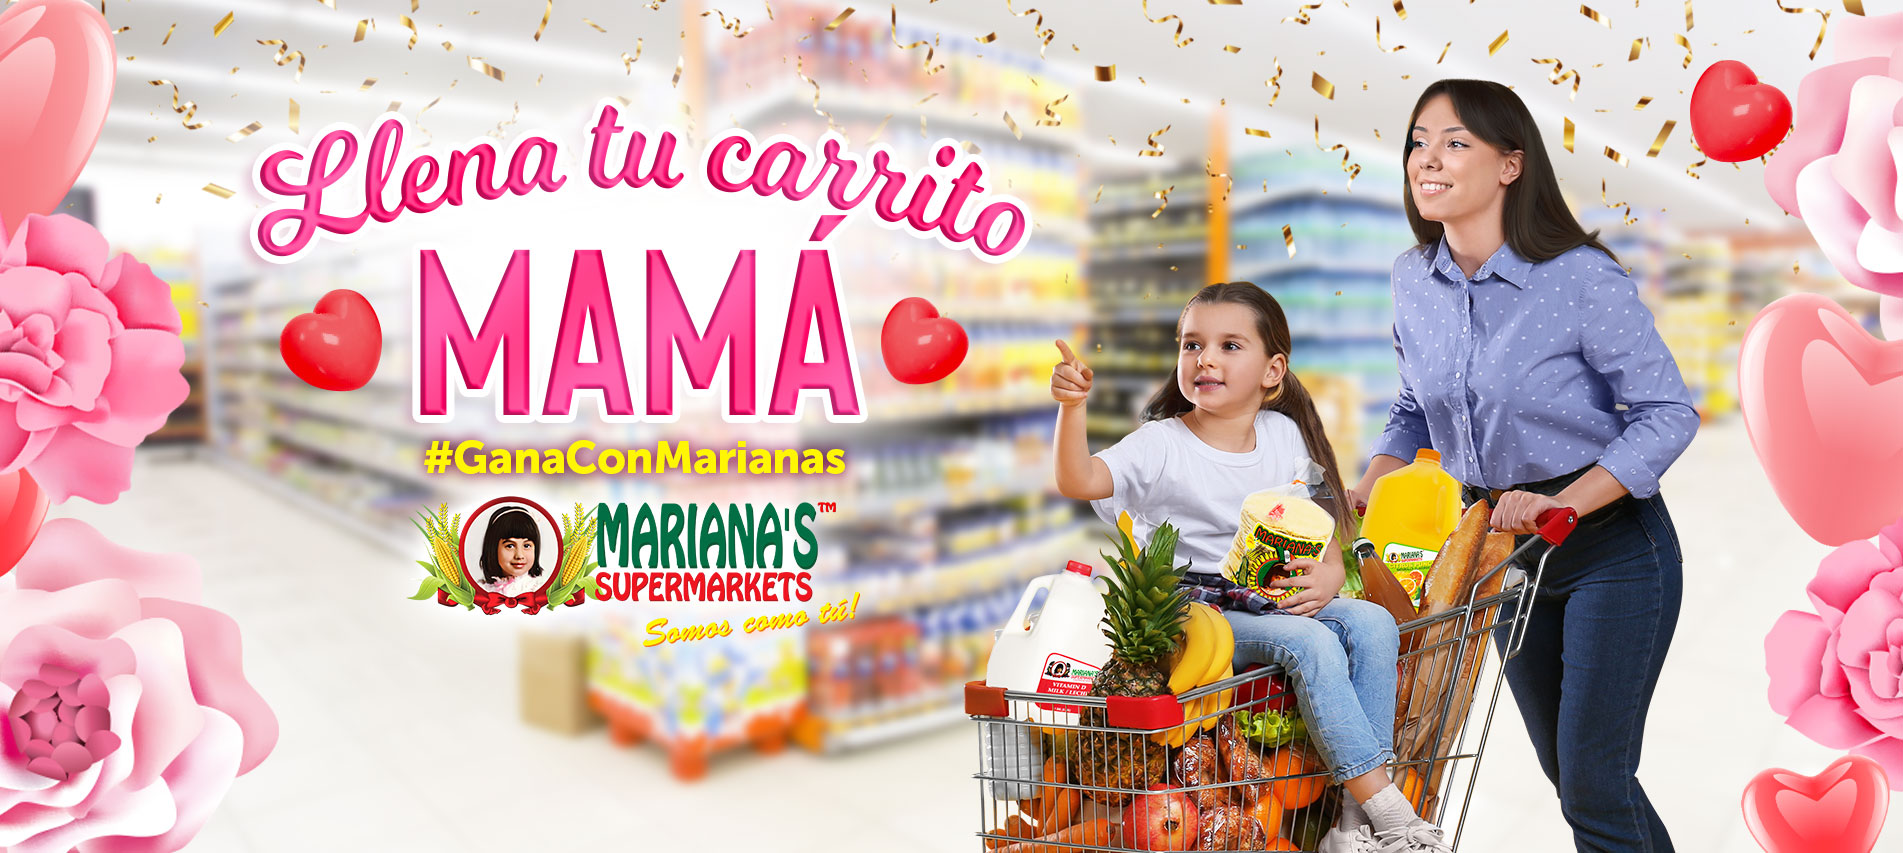 Mariana's market MAMA Gana Con Marianas